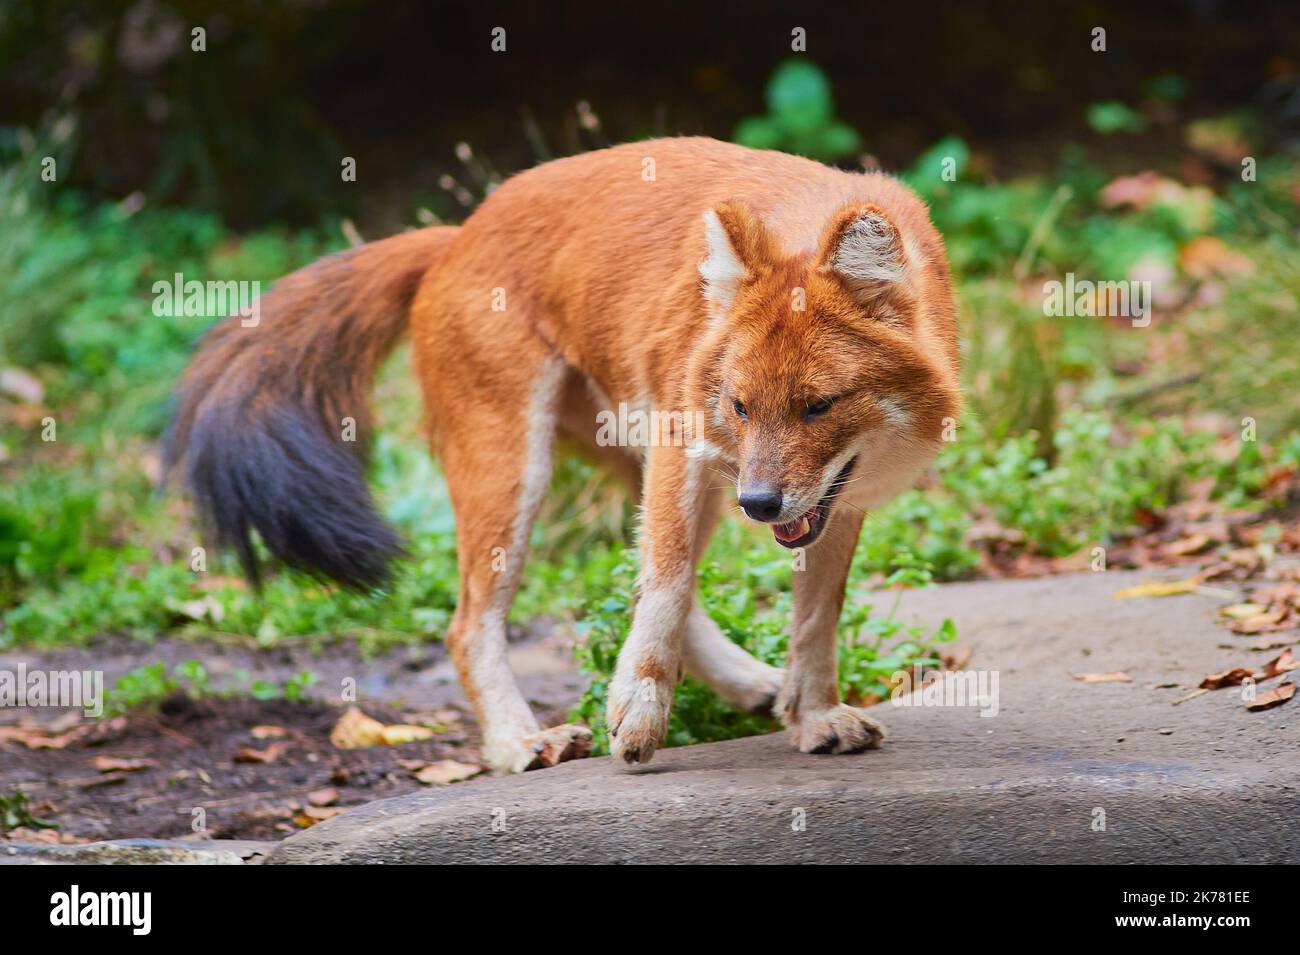 Asian wild dog roaming its enclosure at the bronx zoo Stock Photo